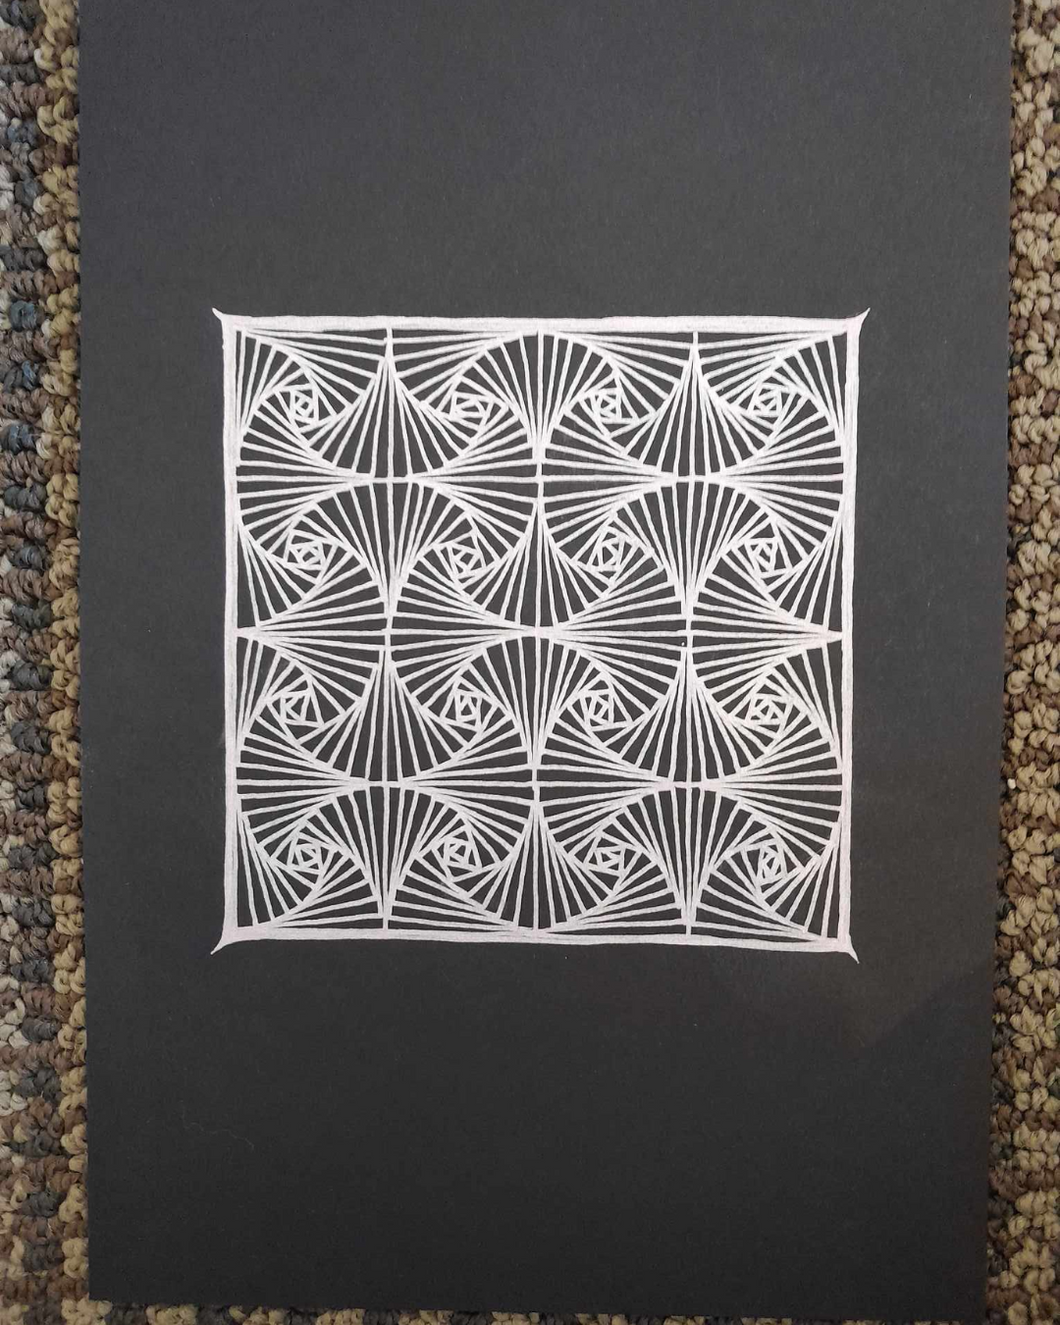 Repeating pattern zentangle in shiny gel pen.